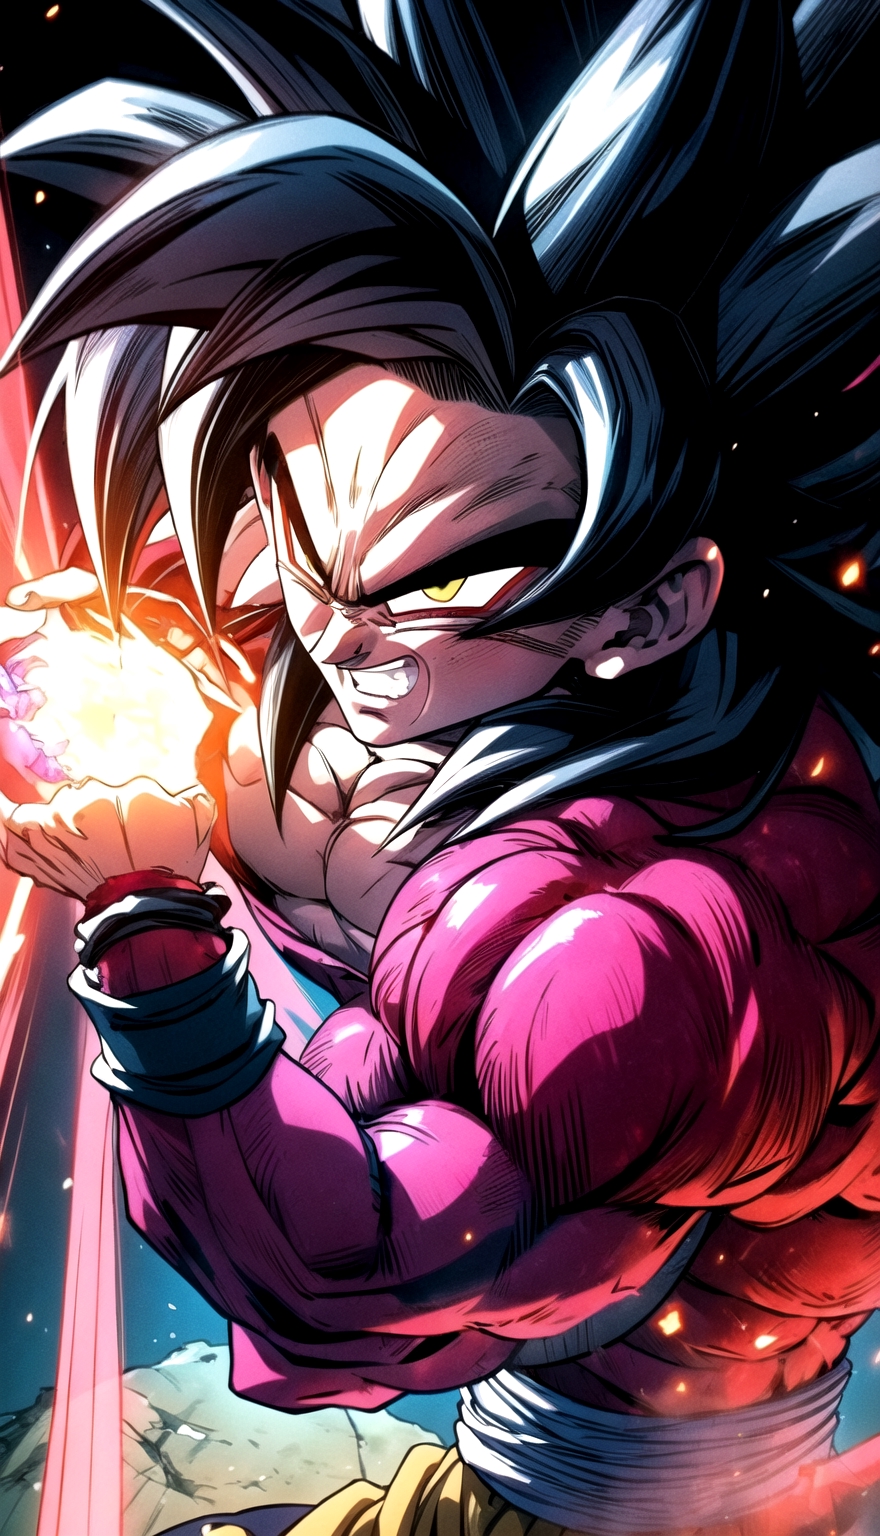 Super Saiyan 4 Goku (Dragon Ball) - v1.0